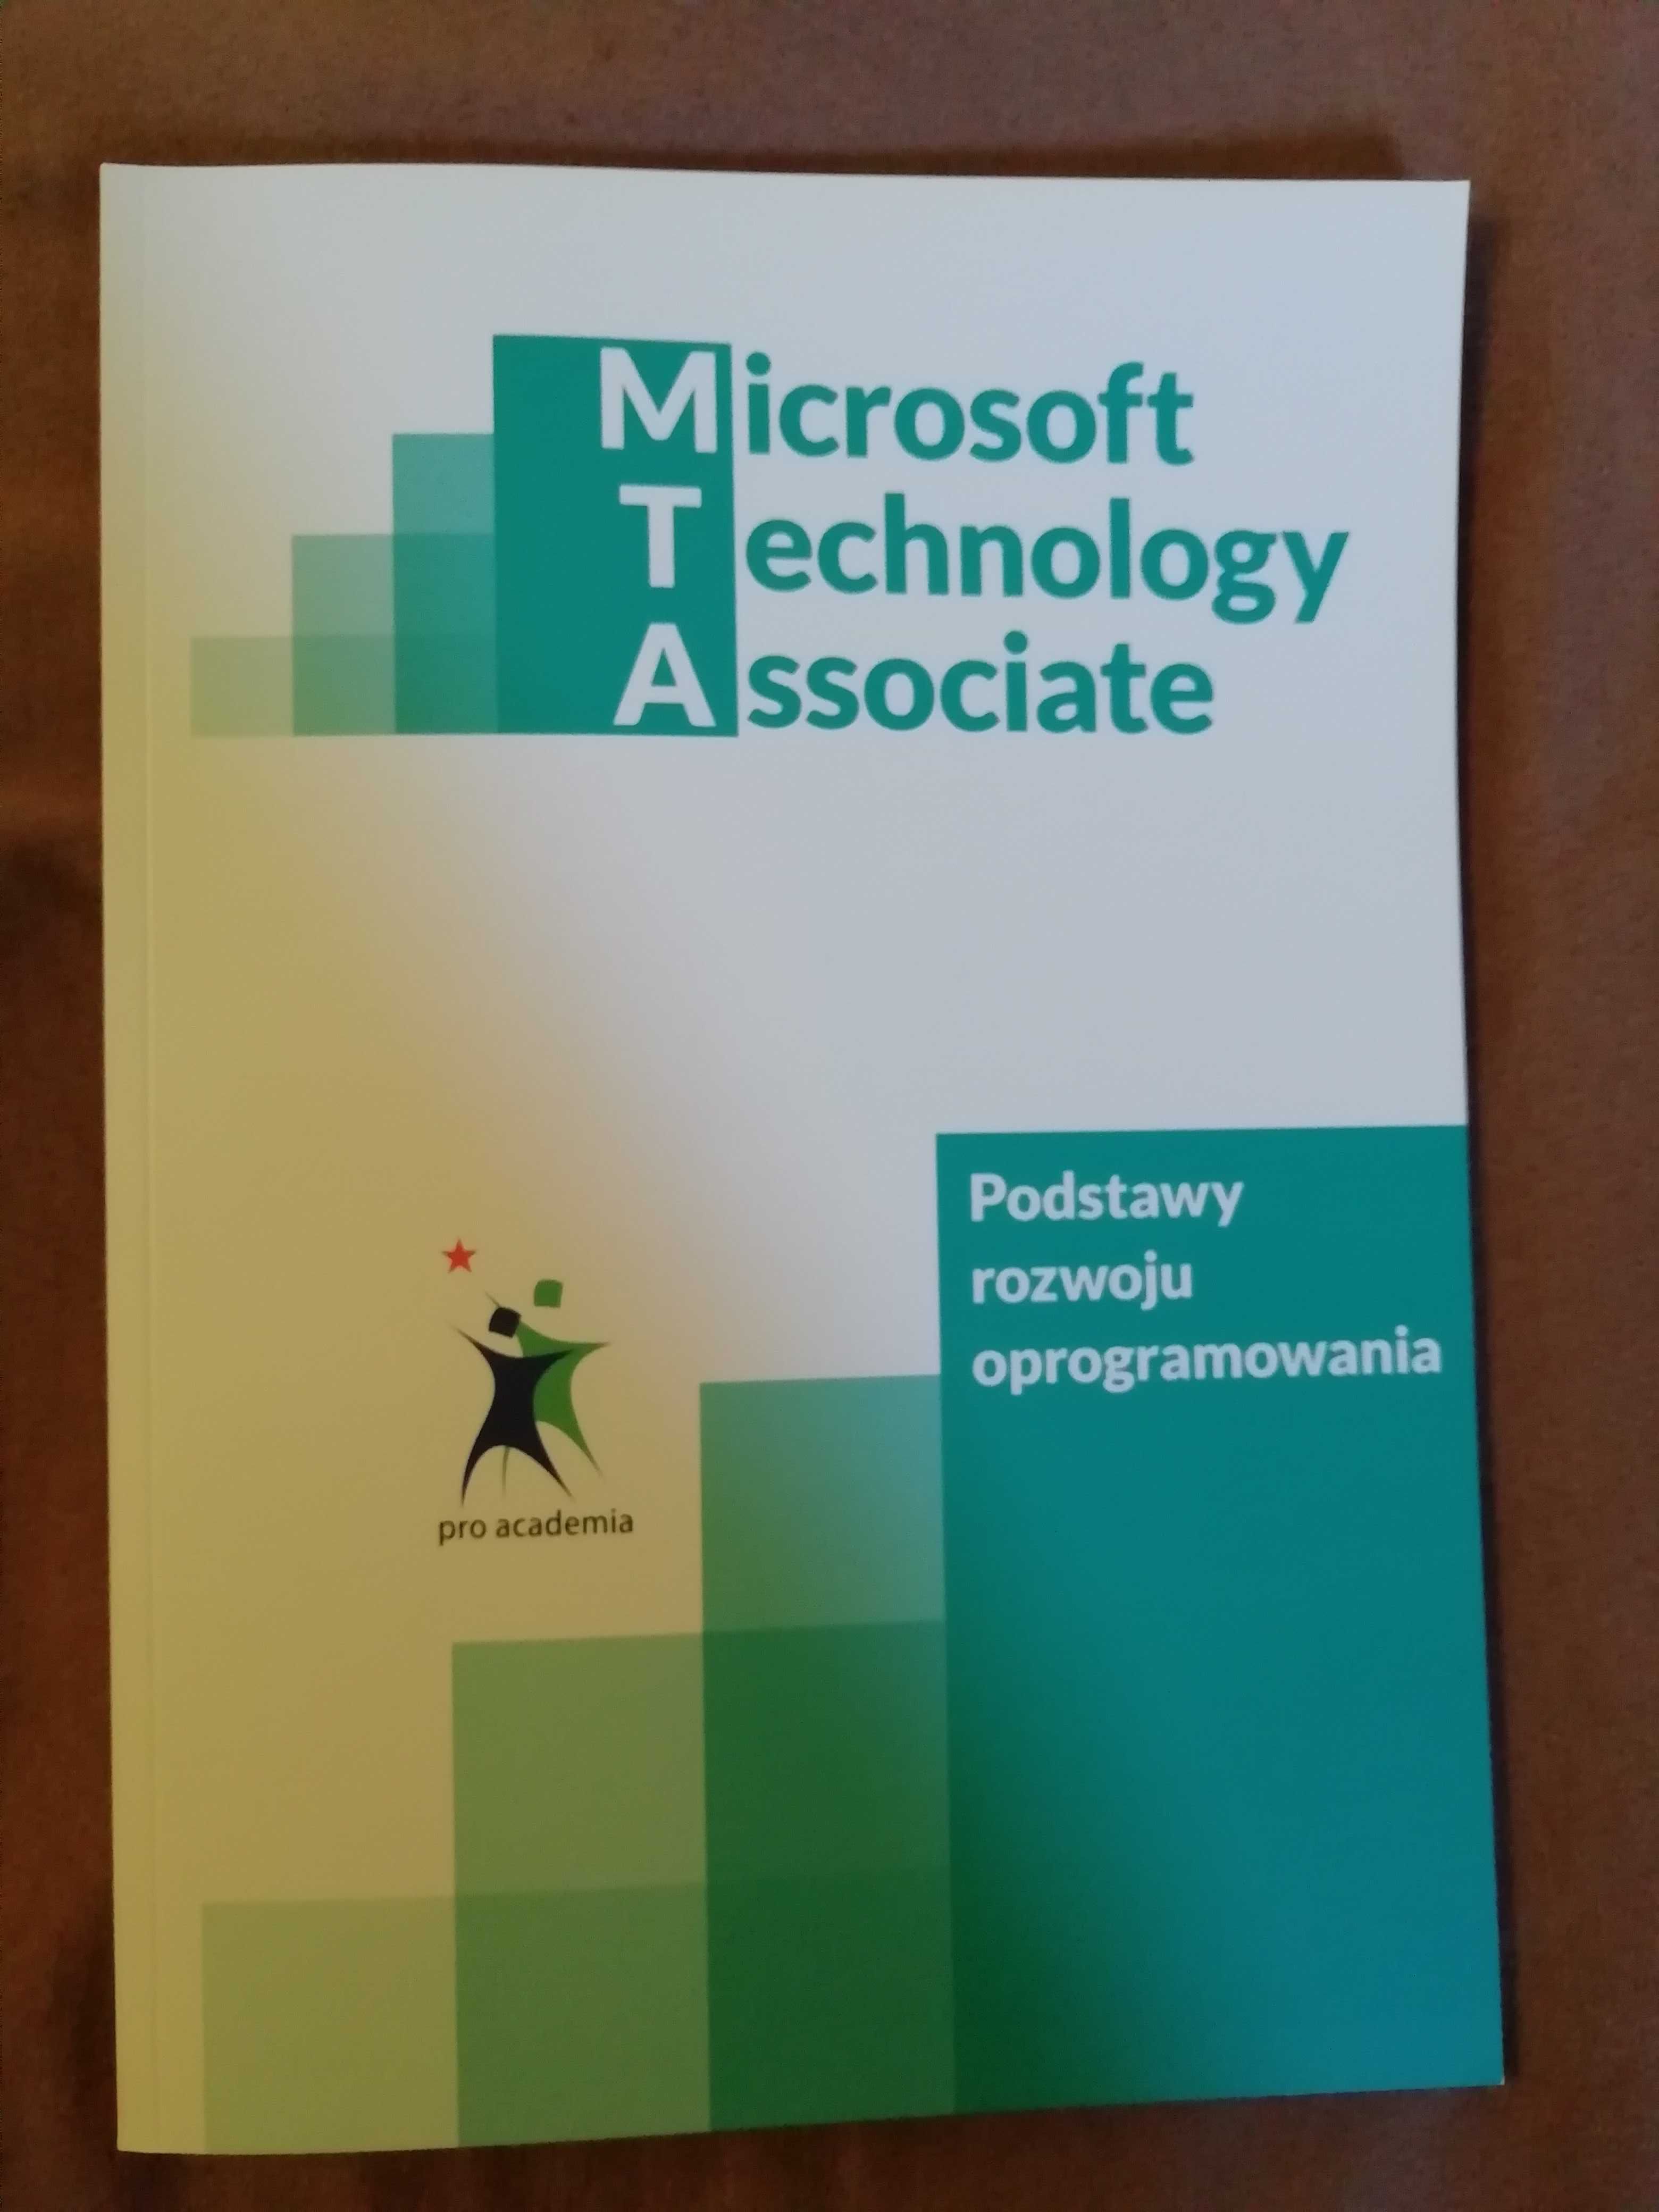 MTA Microsoft Technology Associate Podstawy rozwoju oprogramowania